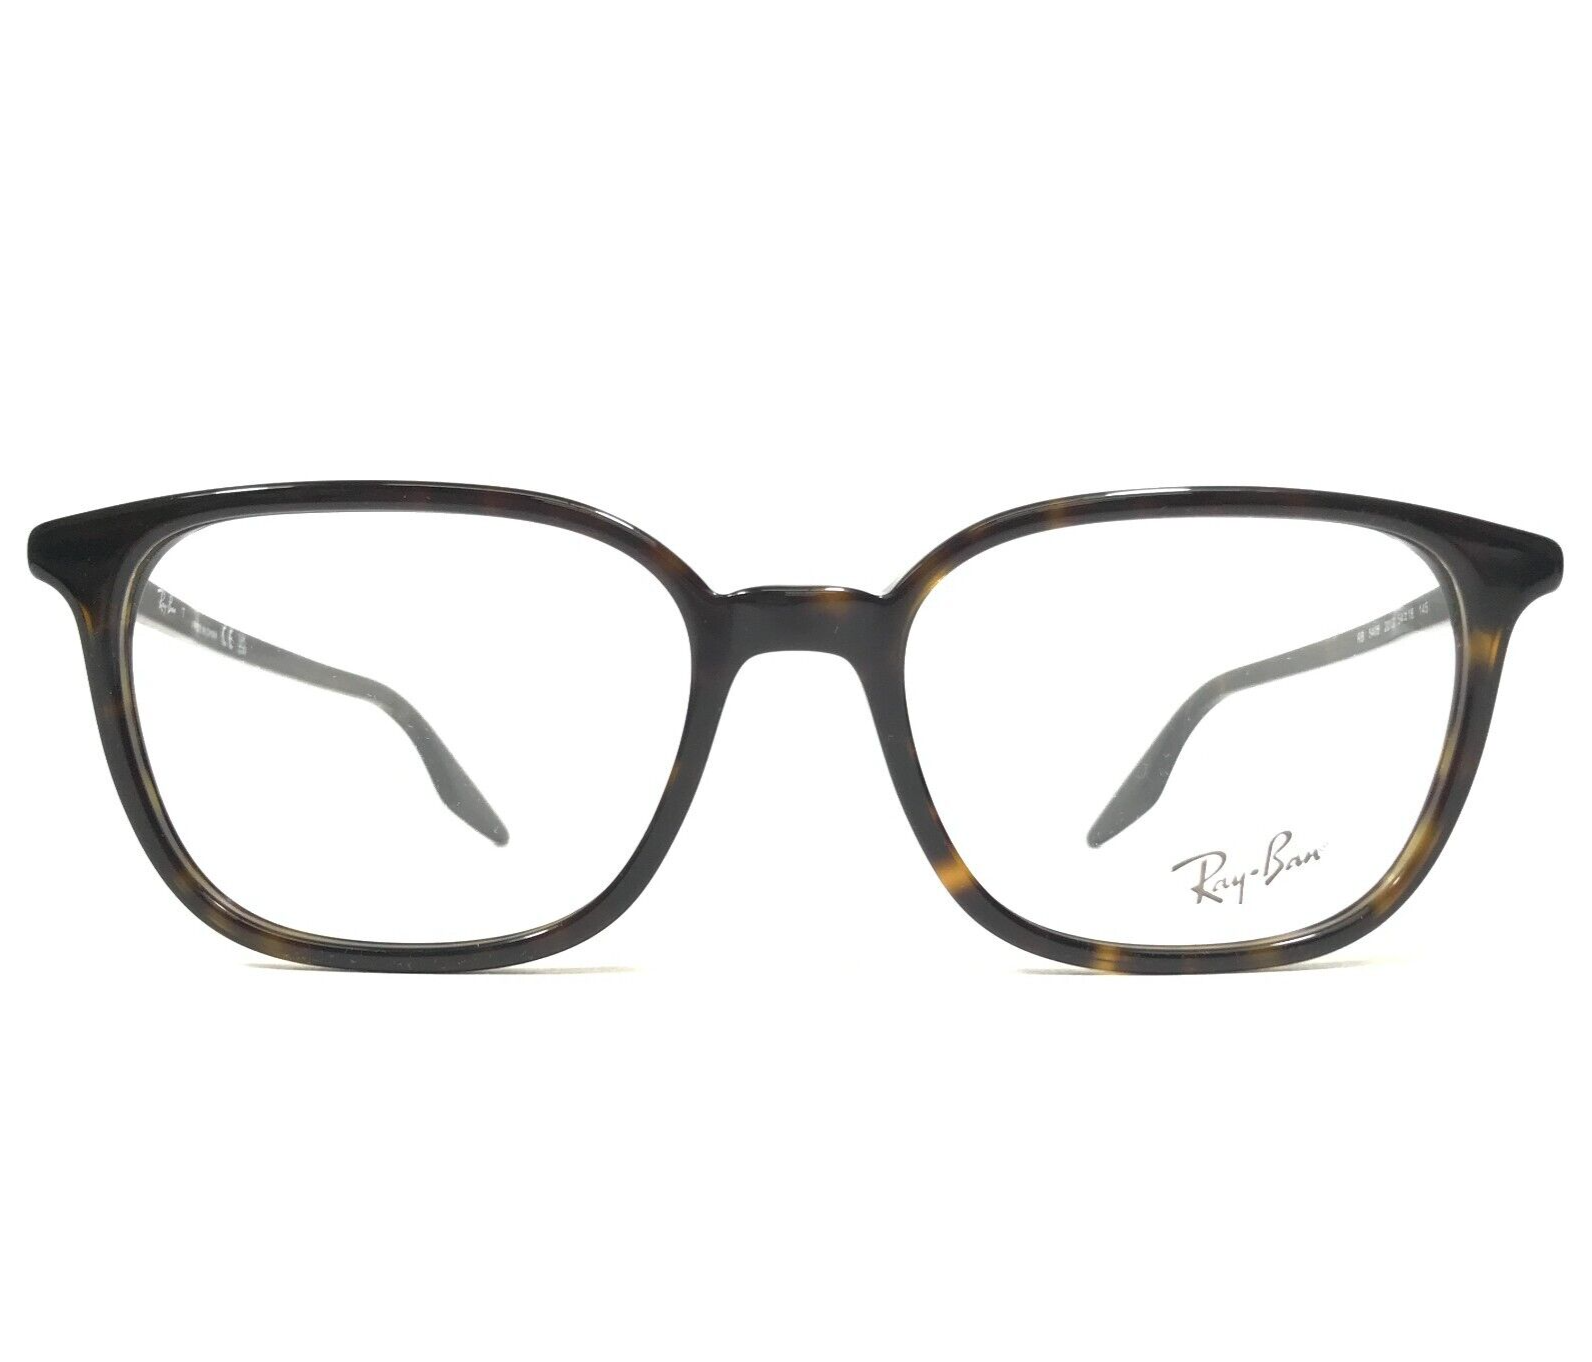 Primary image for Ray-Ban Eyeglasses Frames RB5406 2012 Tortoise Square Full Rim 54-18-145